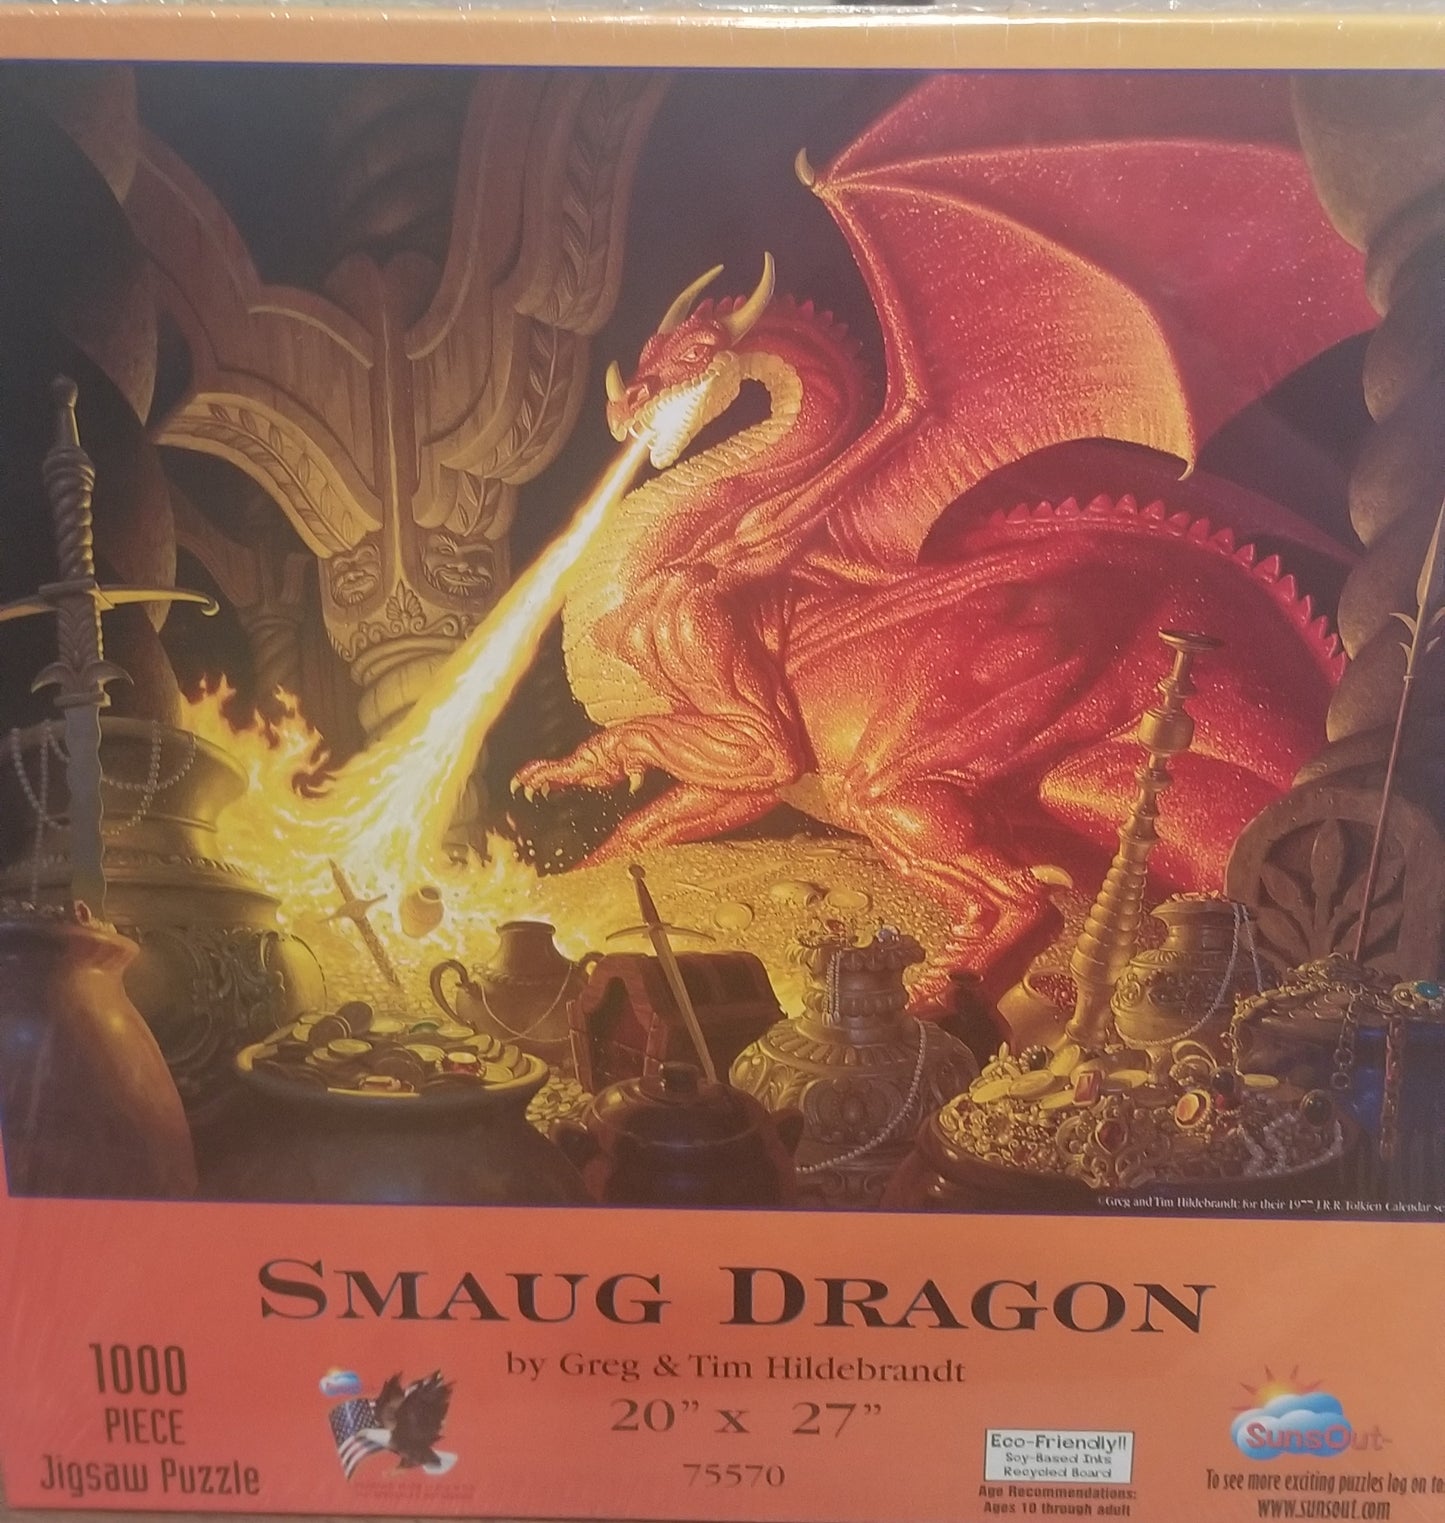 Smaug Dragon af Greg &amp; Tim Hildebrandt, 1000 brikker puslespil